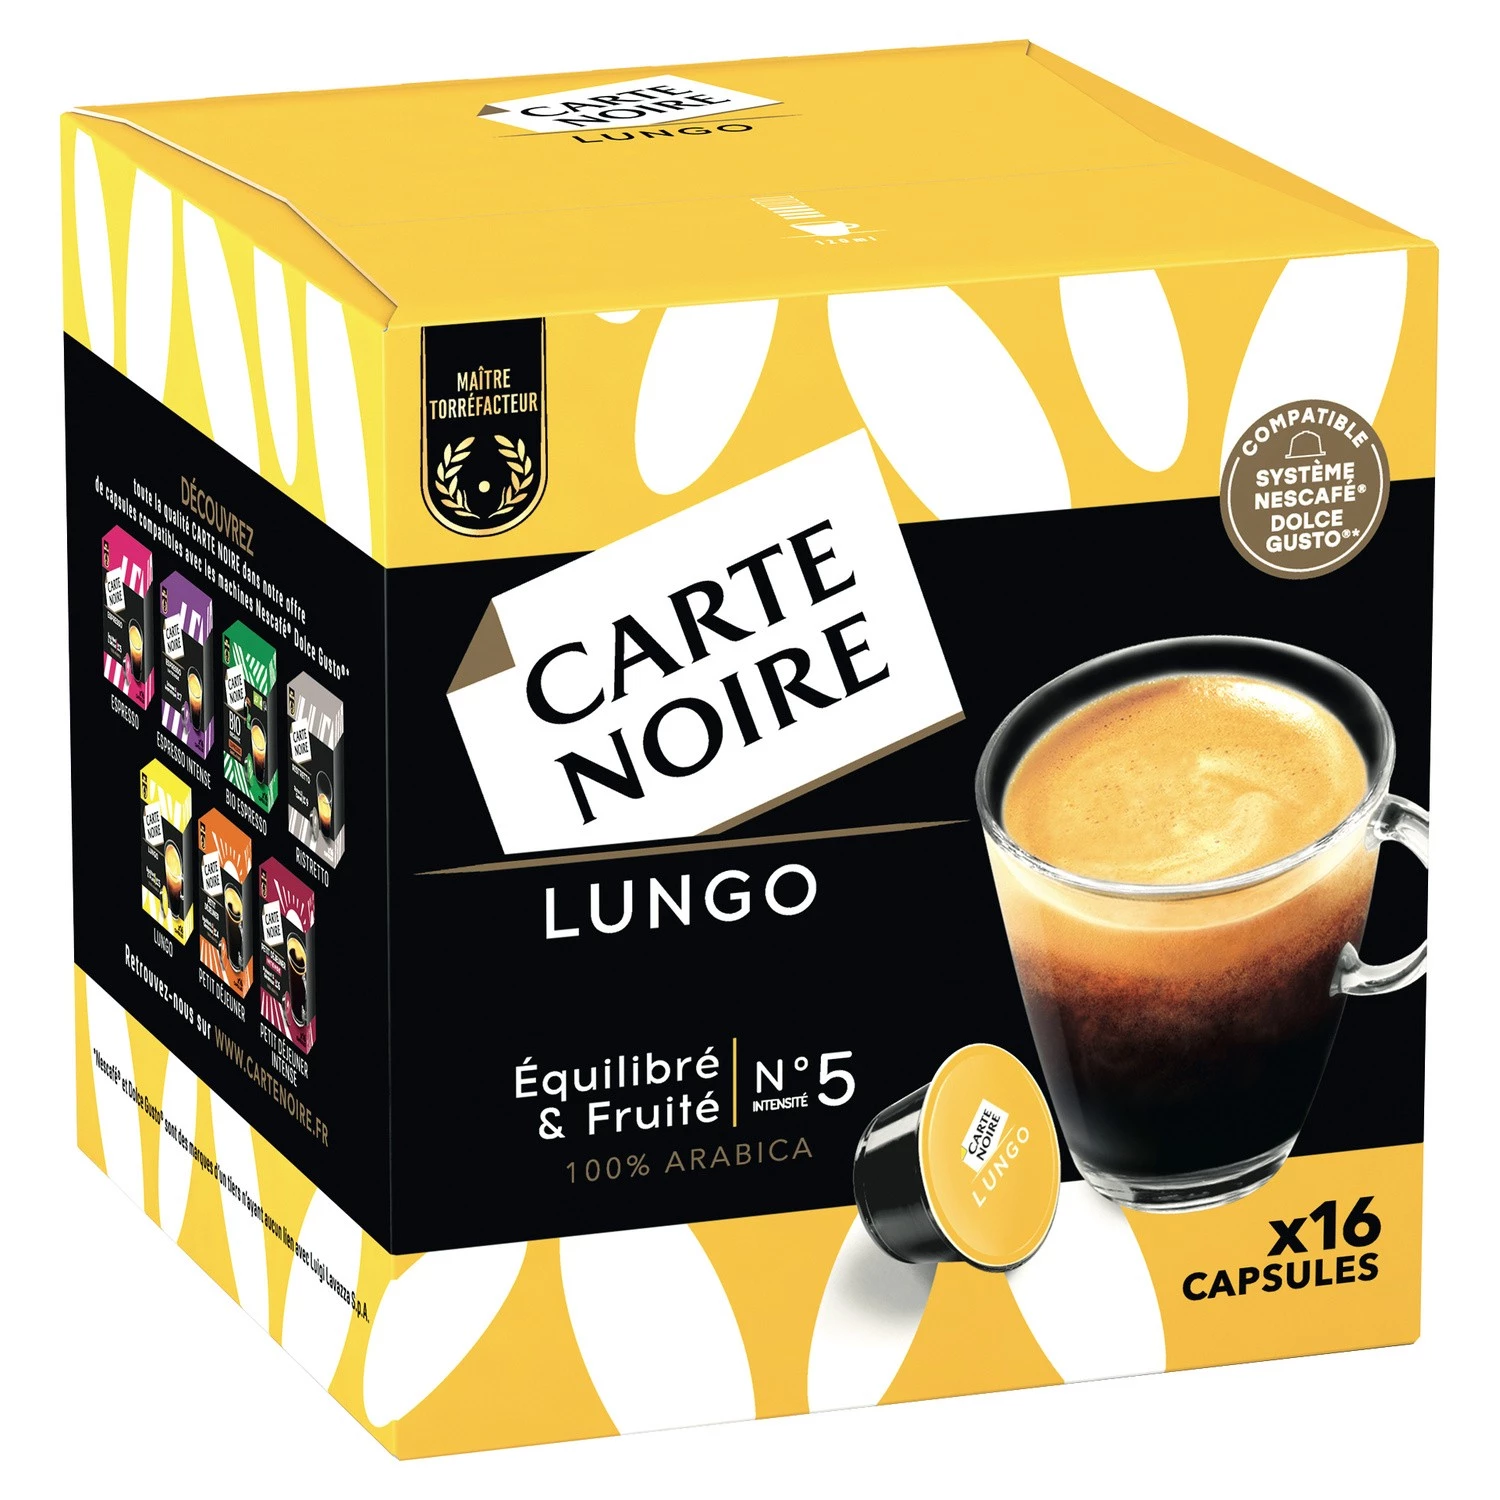 Capsule Café lungo n°5 x16 capsule 128g - CARTE NOIRE